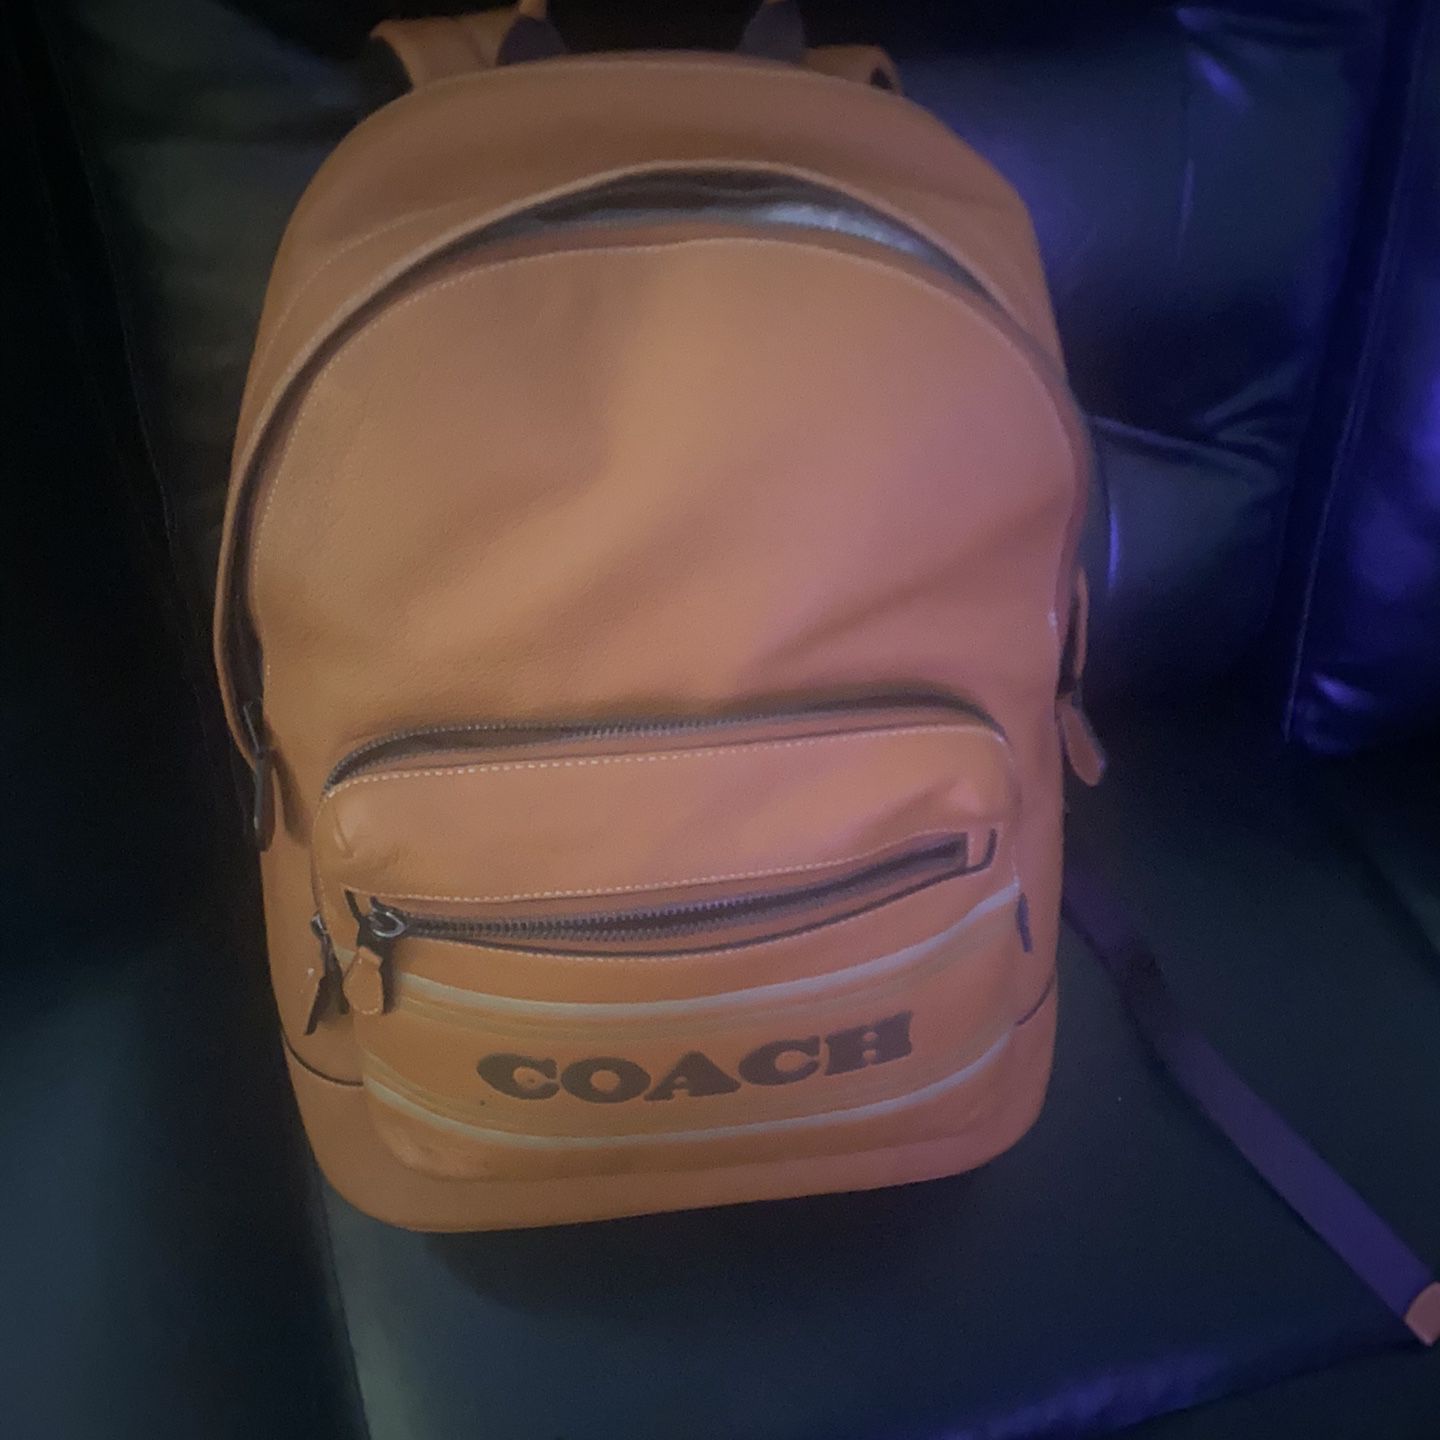 Coach Striped Book Bag 